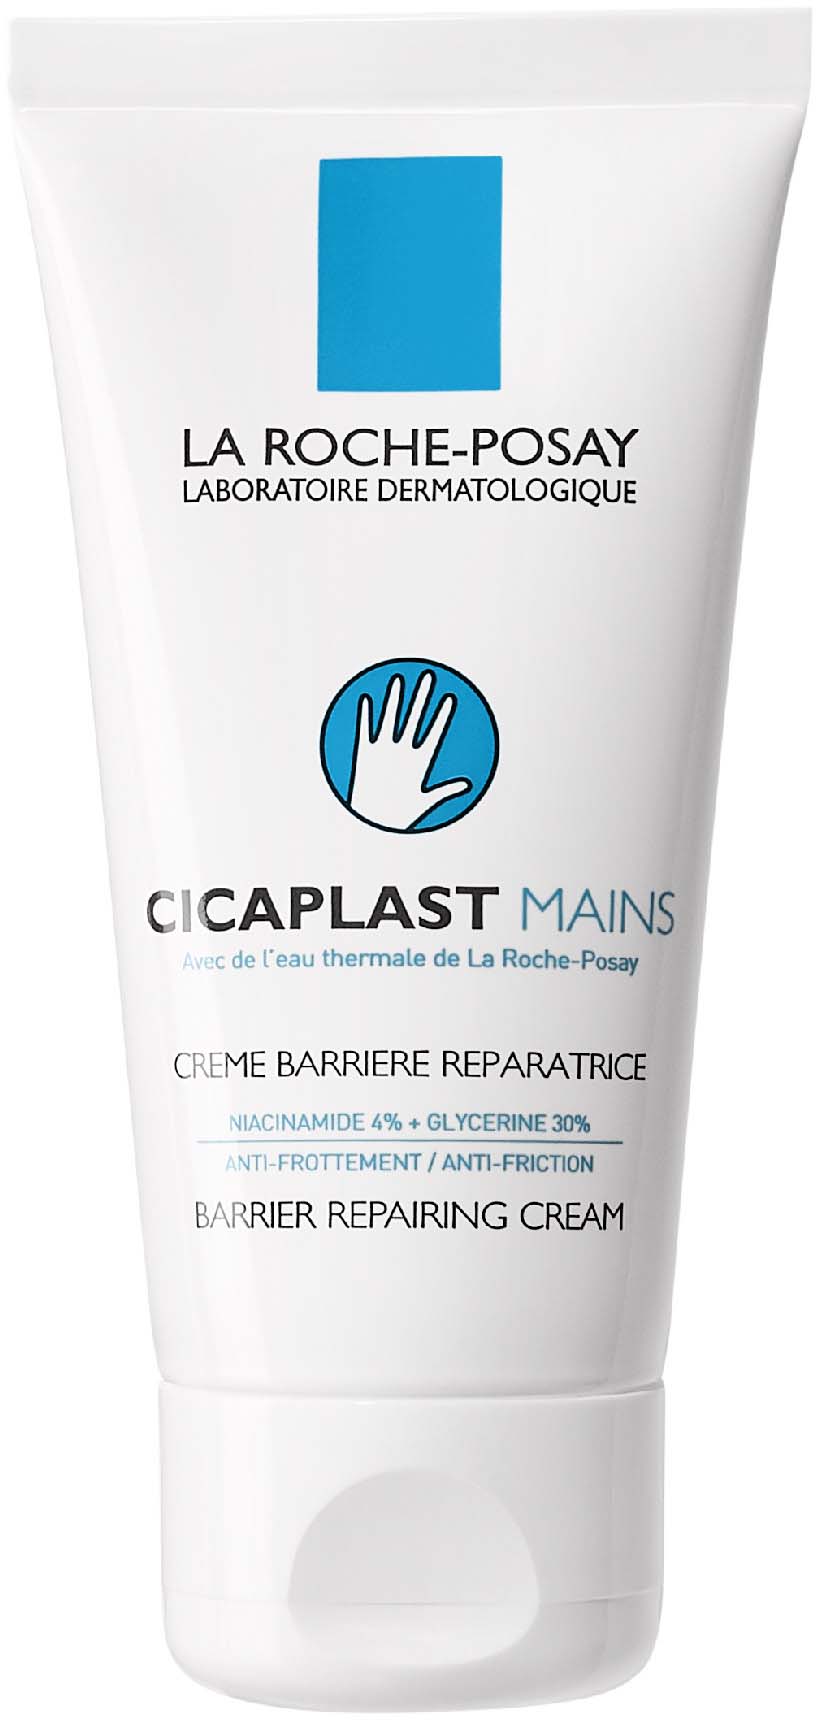 La Roche-Posay Regenerujący krem do rąk odbudowujący barierę ochronną skóry - Cicaplast Mains Regenerujący krem do rąk odbudowujący barierę ochronną skóry - Cicaplast Mains